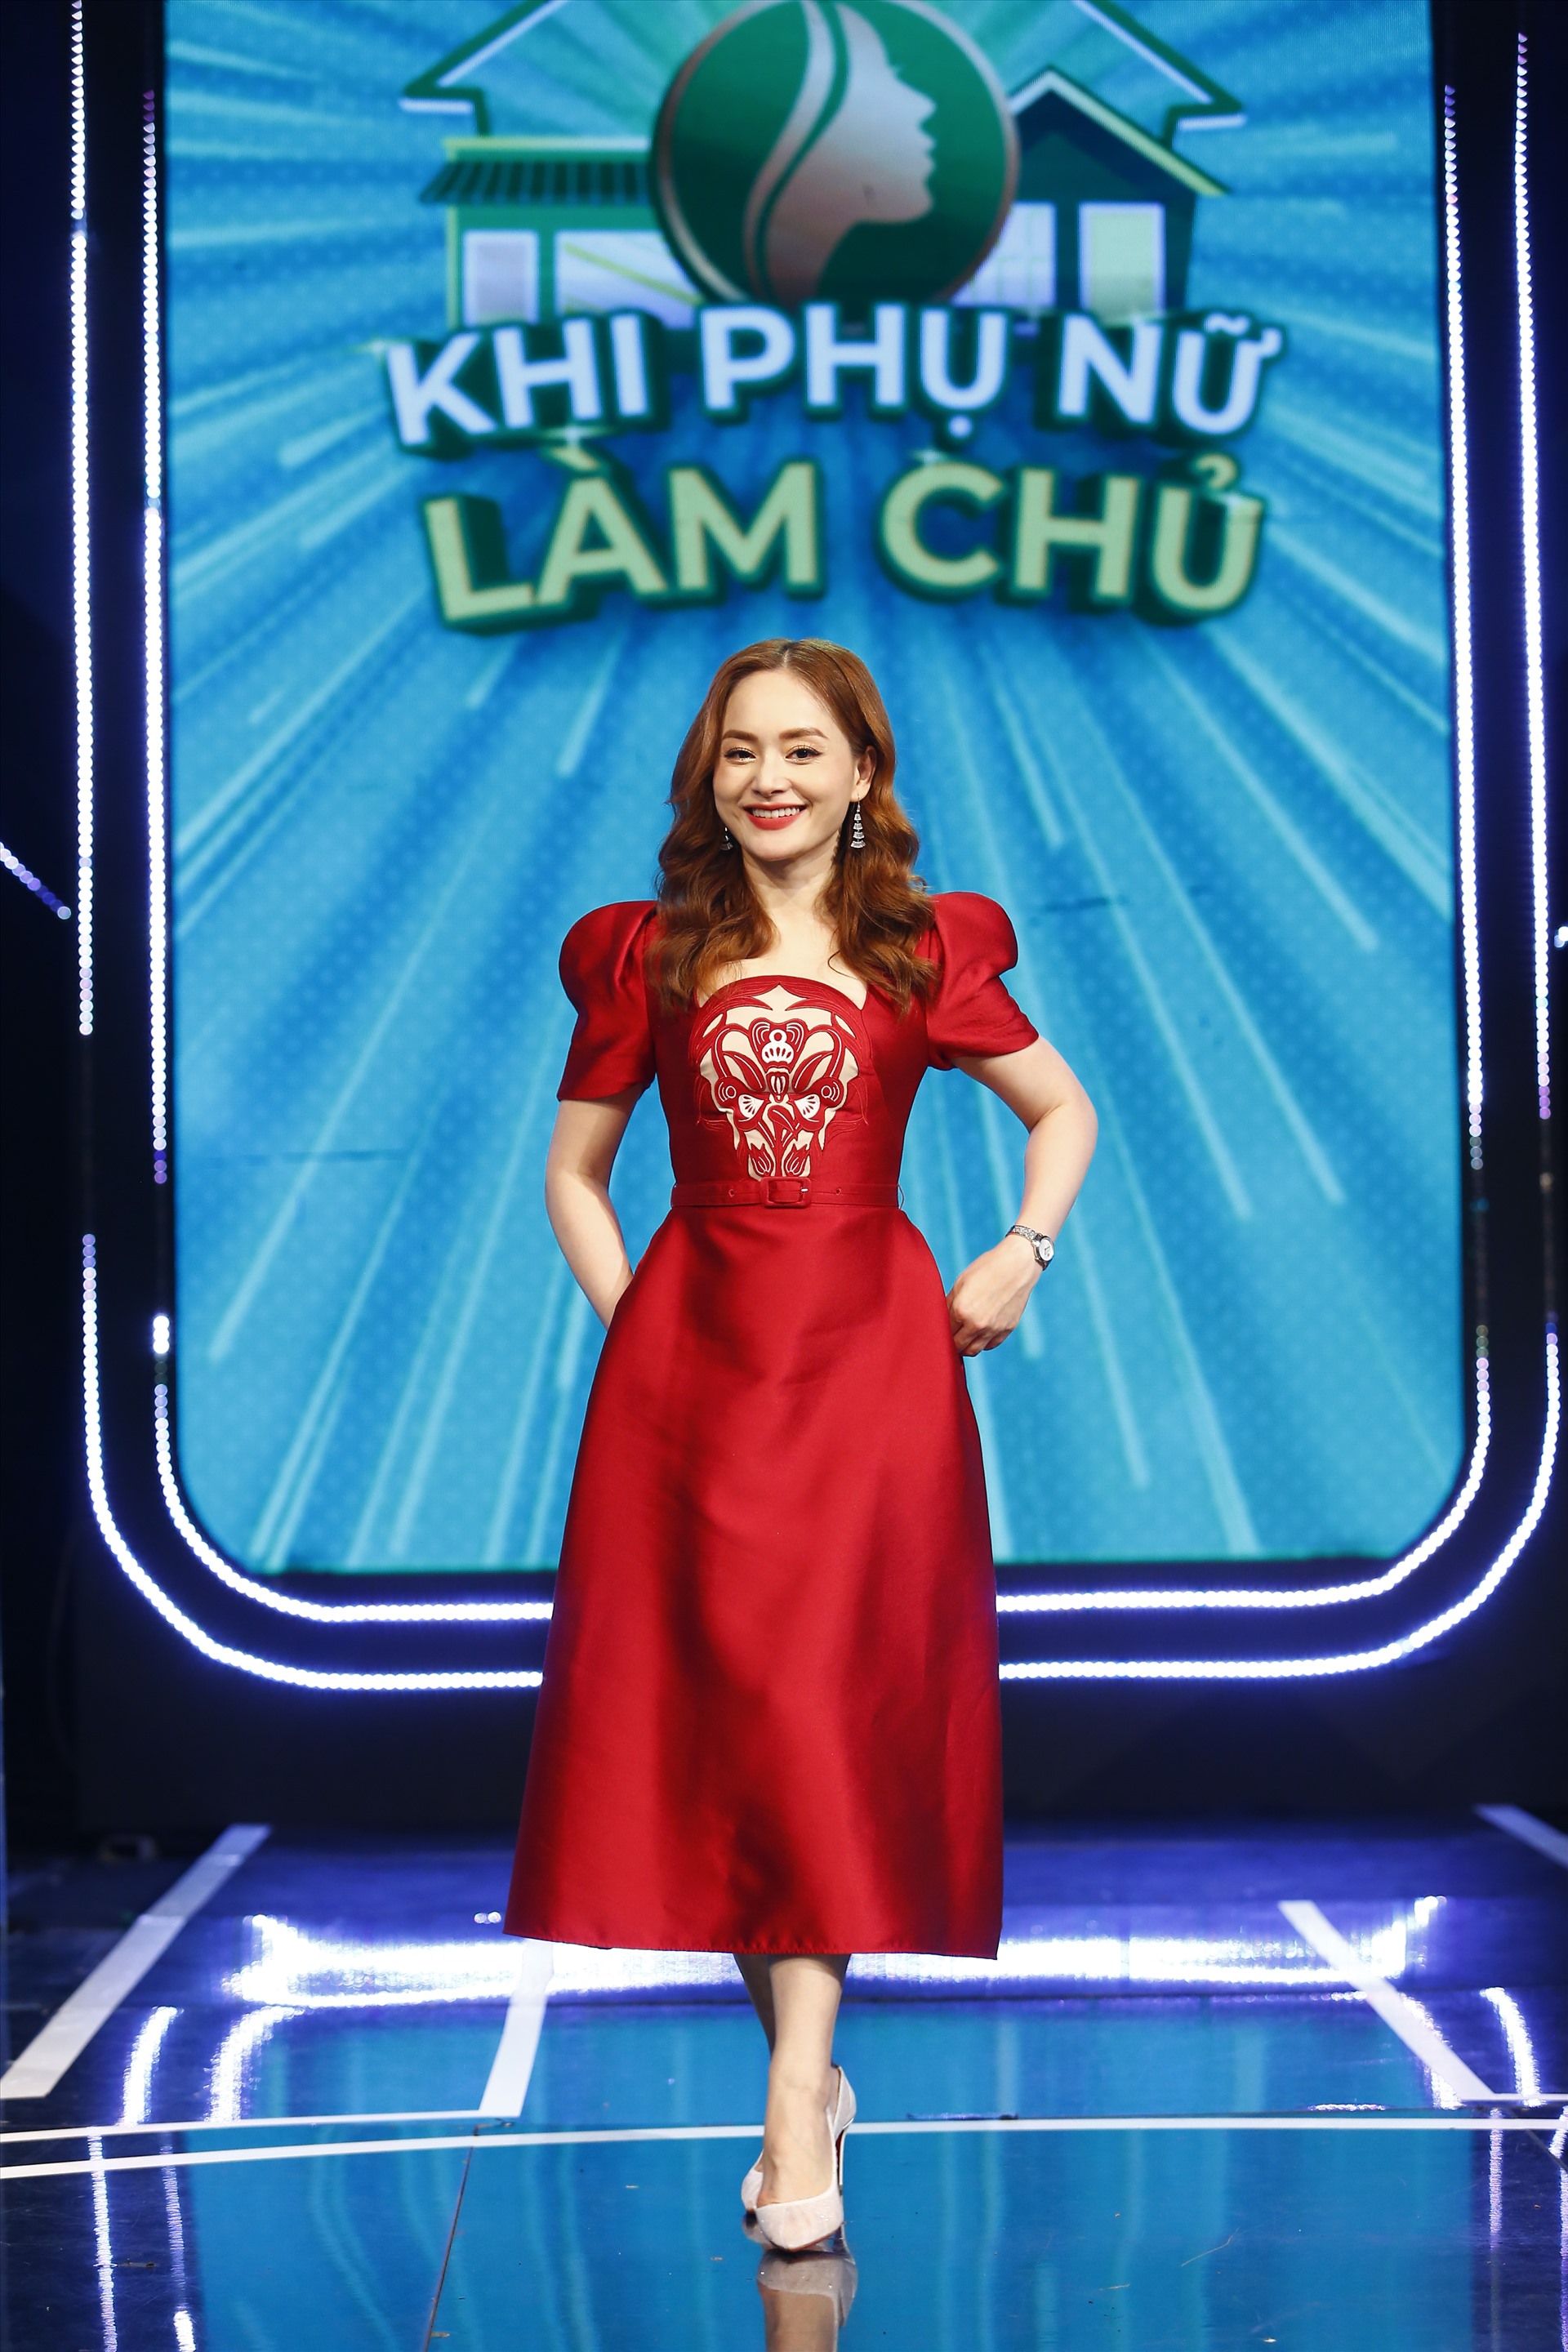 Nữ diễn viên Lan Phương là một trong những thành viên ban giám khảo vòng tuyển chọn. Ảnh: VTV